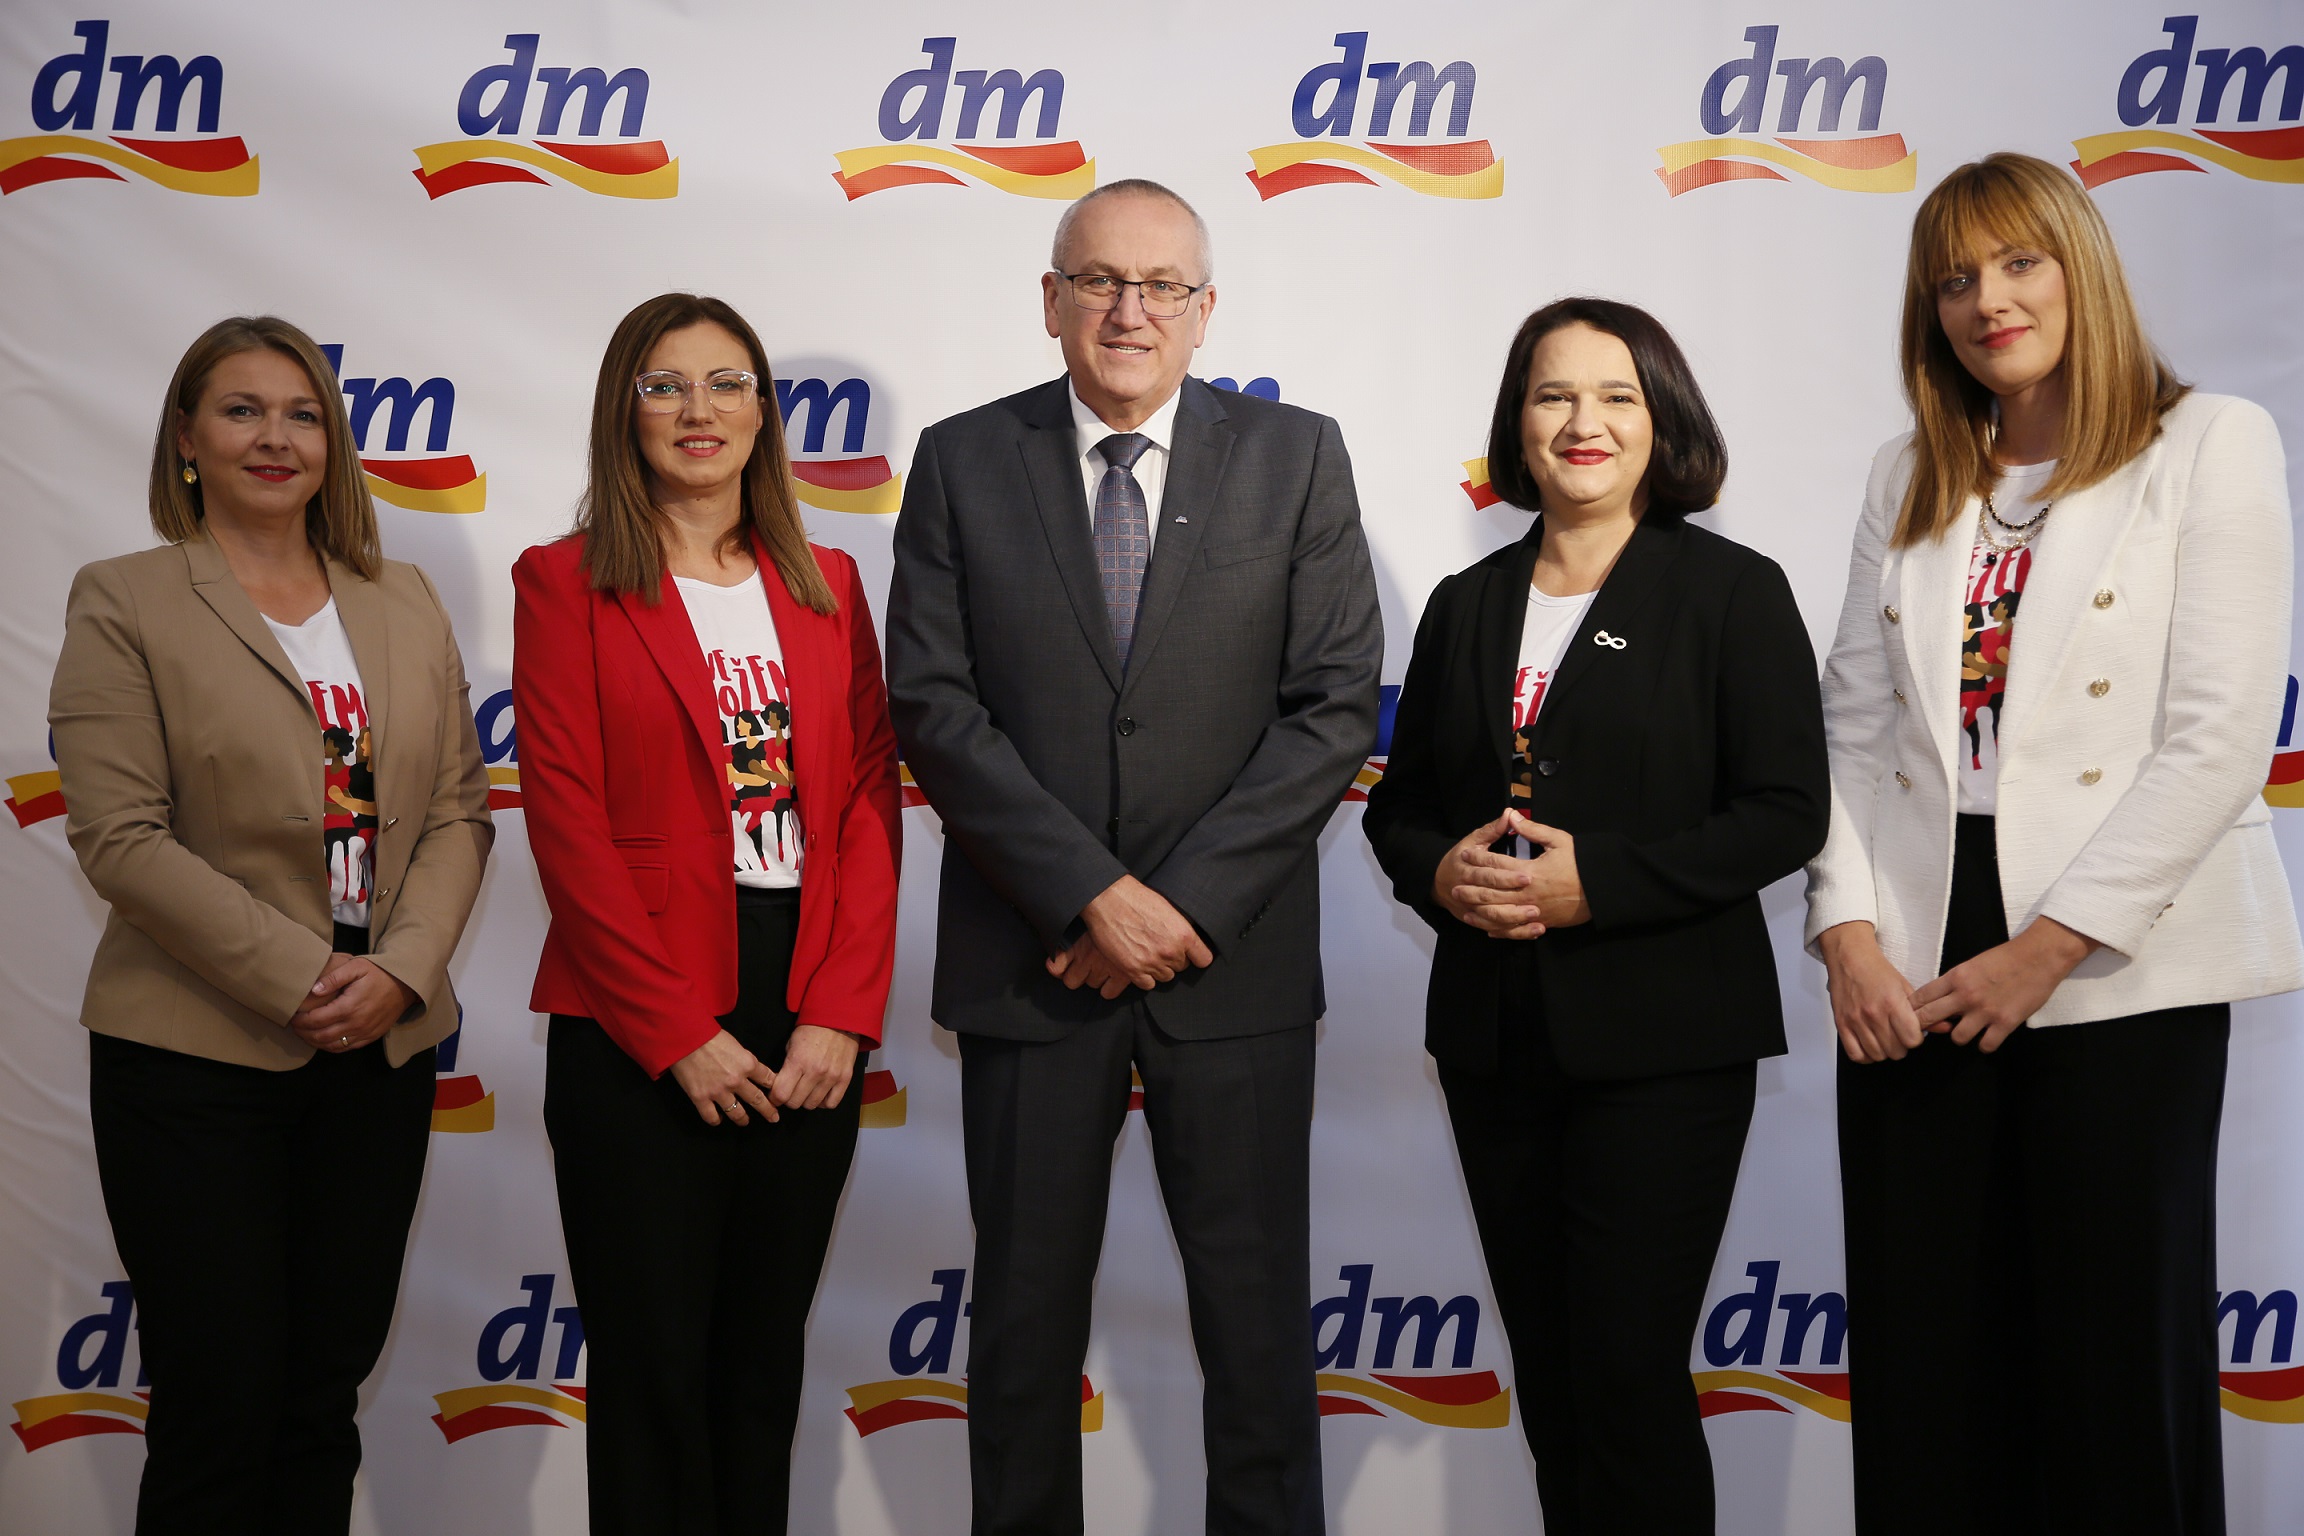 <strong>Drogerijski lider uspješno završio poslovnu godinu: dmBiH ostvario promet od 344,1 miliona KM</strong>